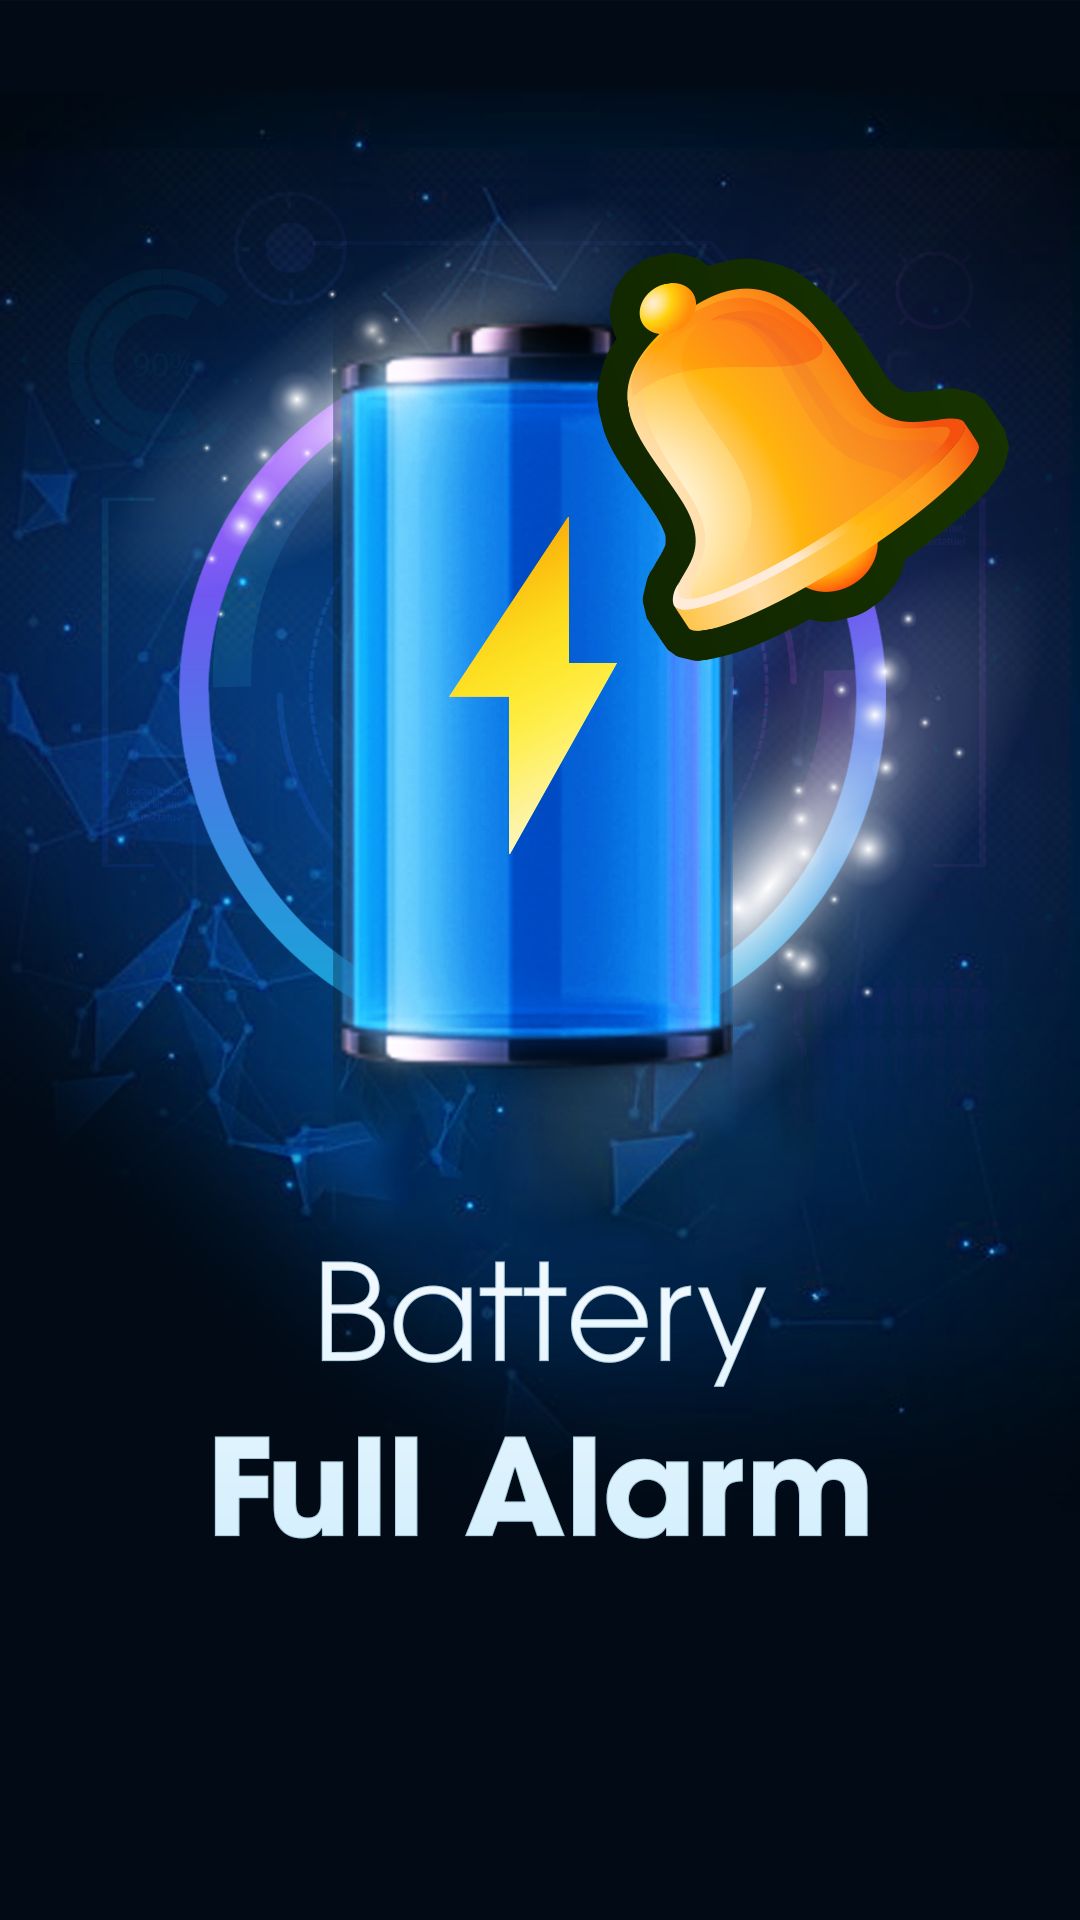 Battery alarm. Full Battery. Alarm Live. Battery is Full.